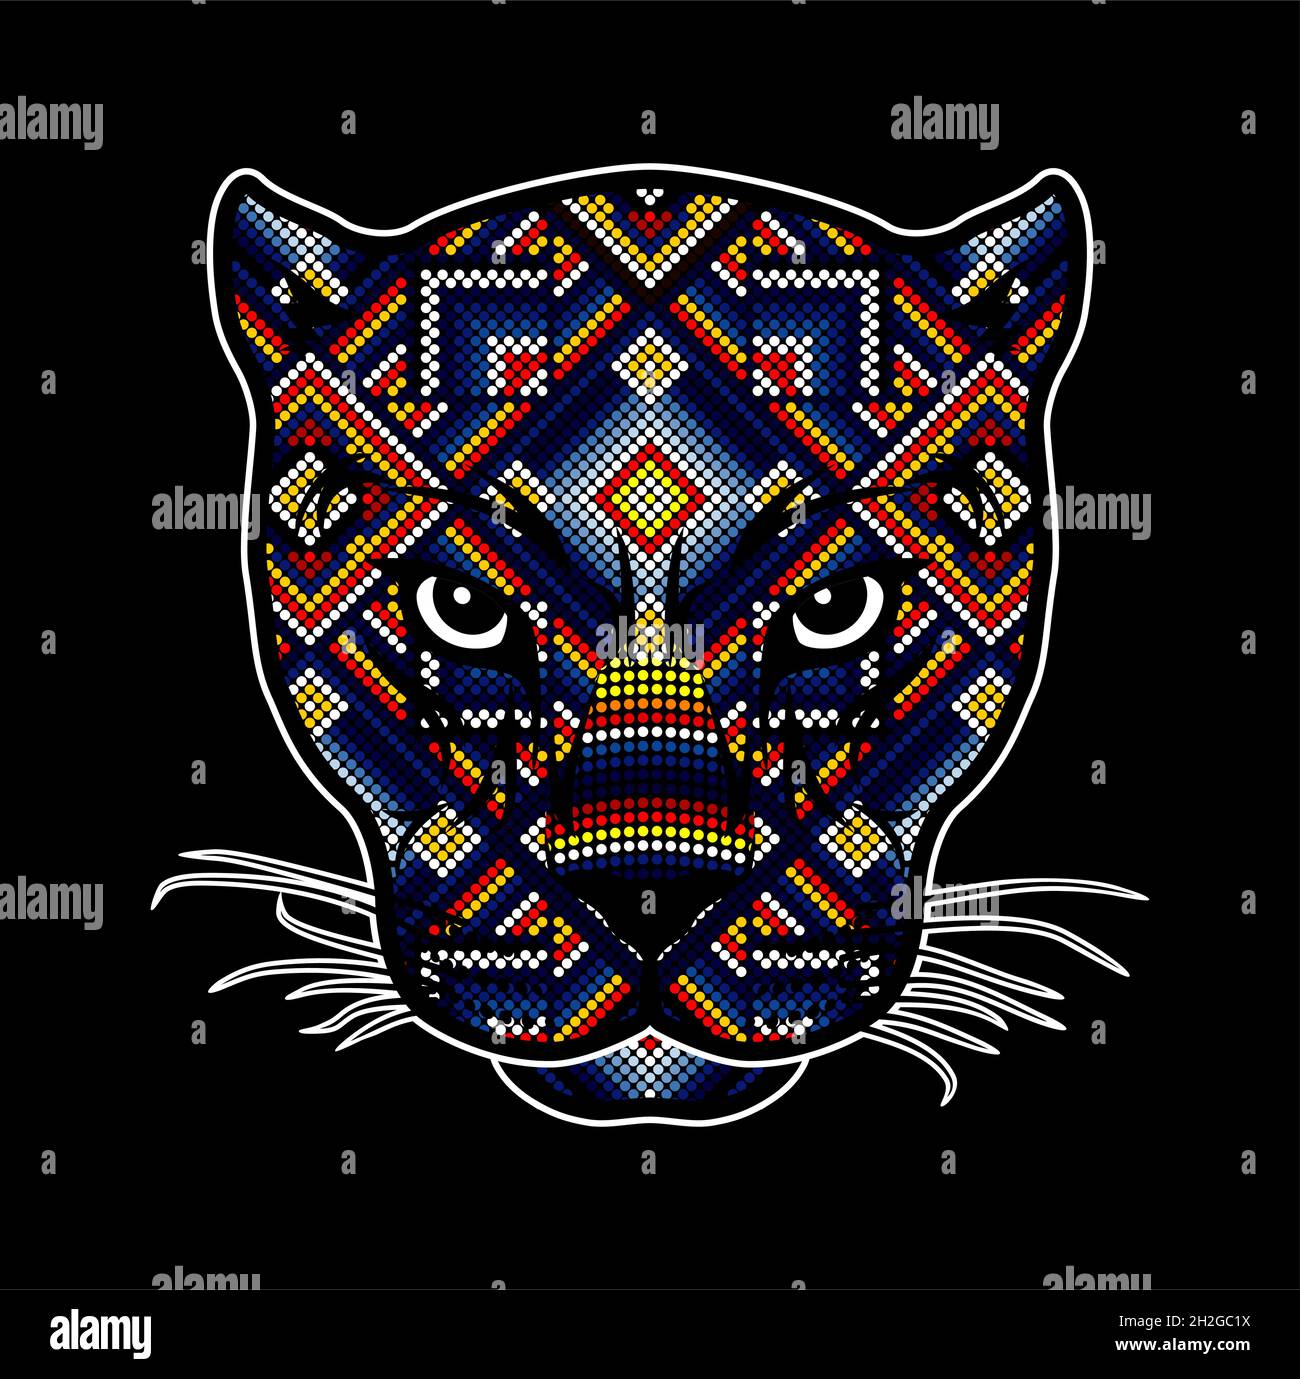 Ilustración vectorial de la colorida cabeza de gato salvaje con abalorios  que podría ser un jaguar, puma, leopardo, etc. inspirado en el arte huichol  mexicano aislado en el bla Imagen Vector de